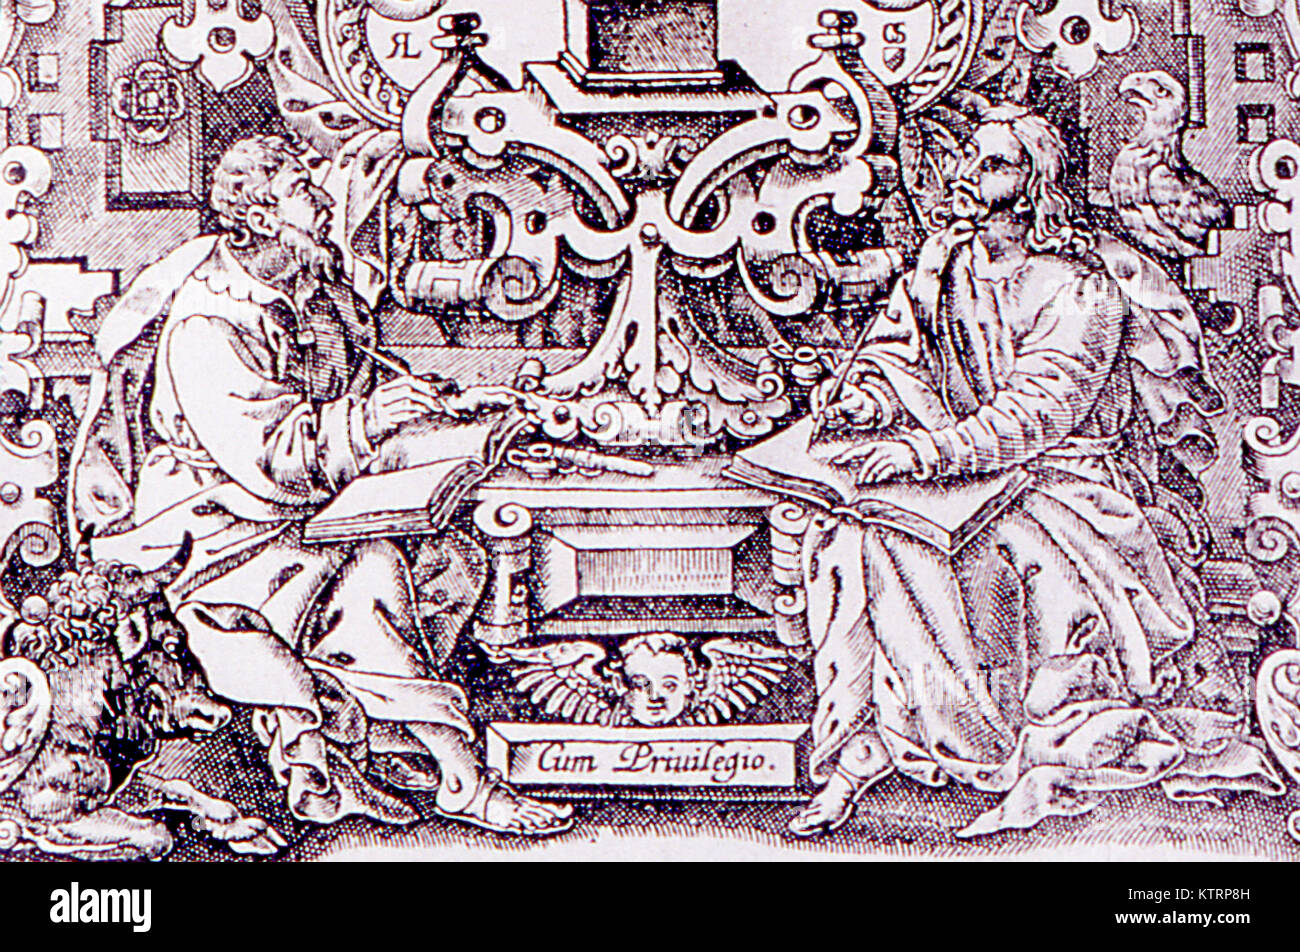 Détail de la page de titre du Nouveau Testament à partir de l'AV 1611 Banque D'Images